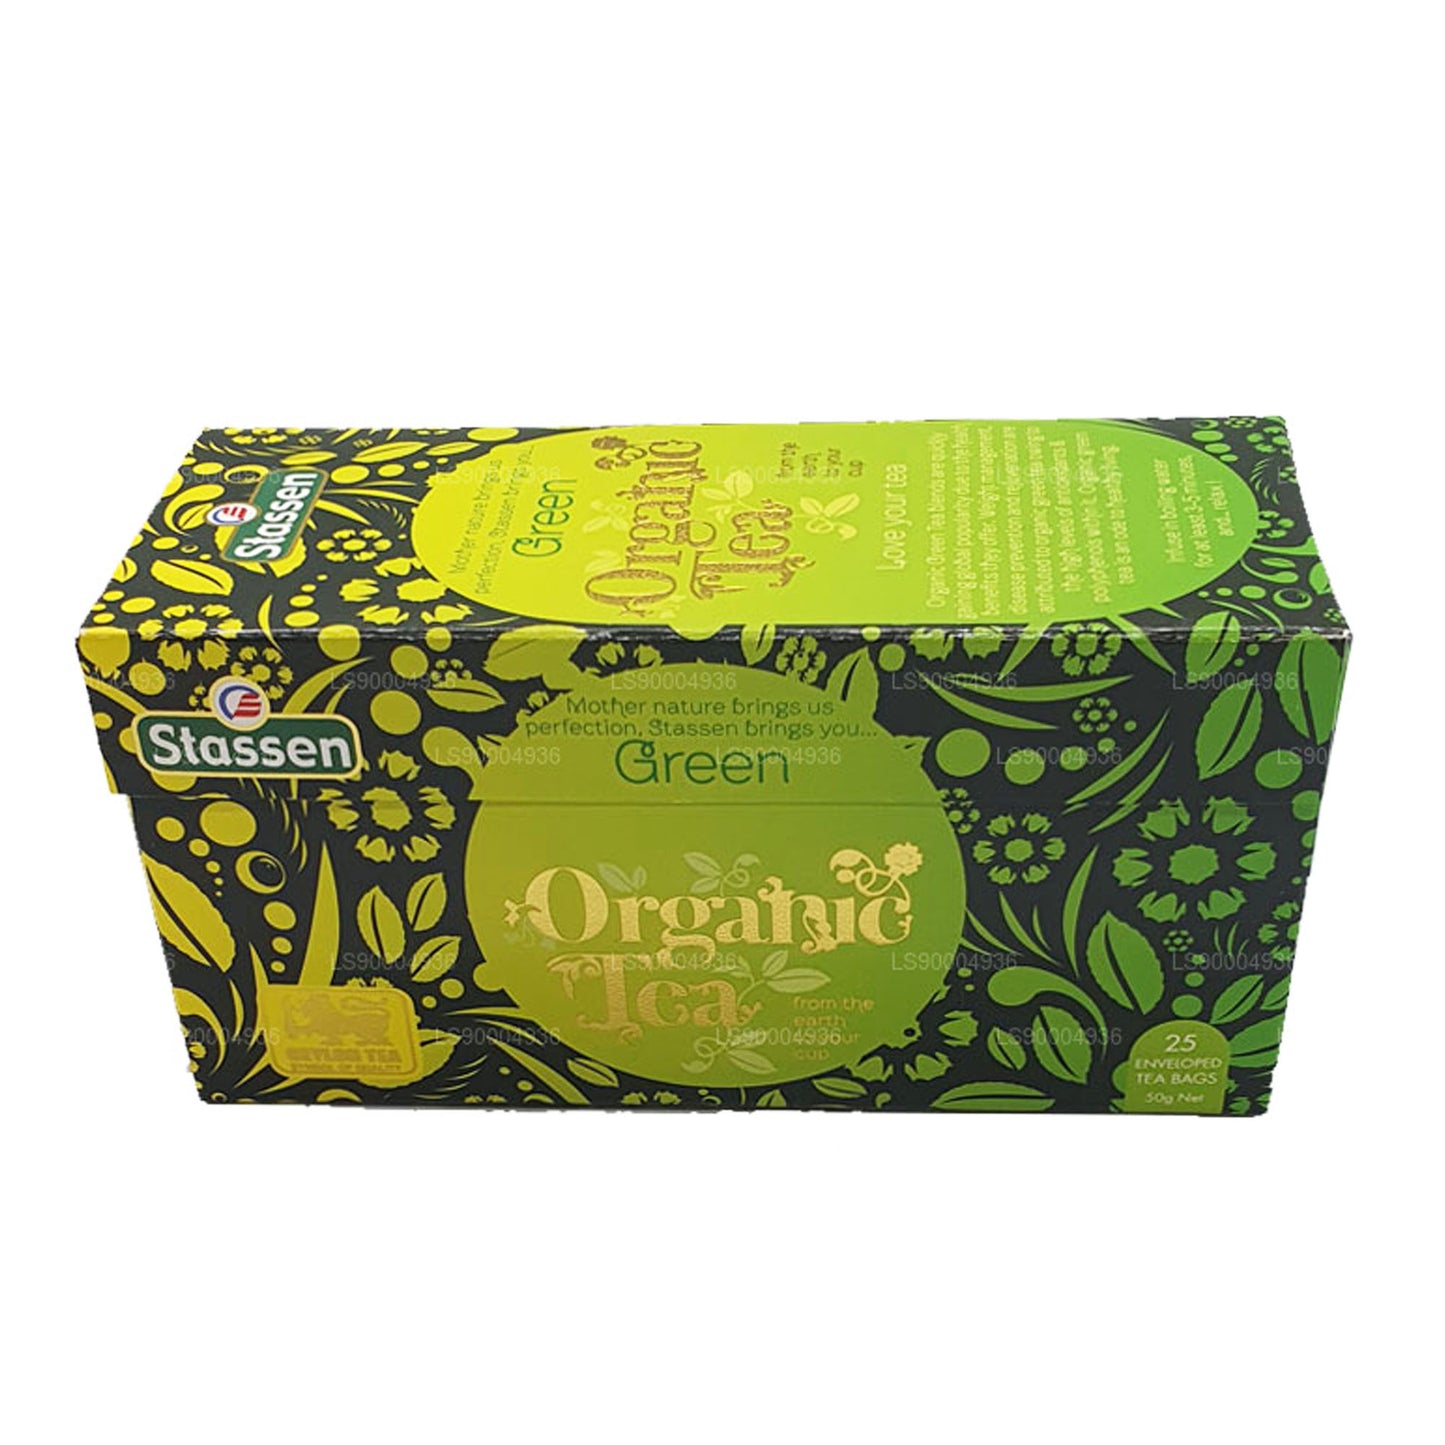 Stassen Grüner Bio-Tee (50g) 25 Teebeutel